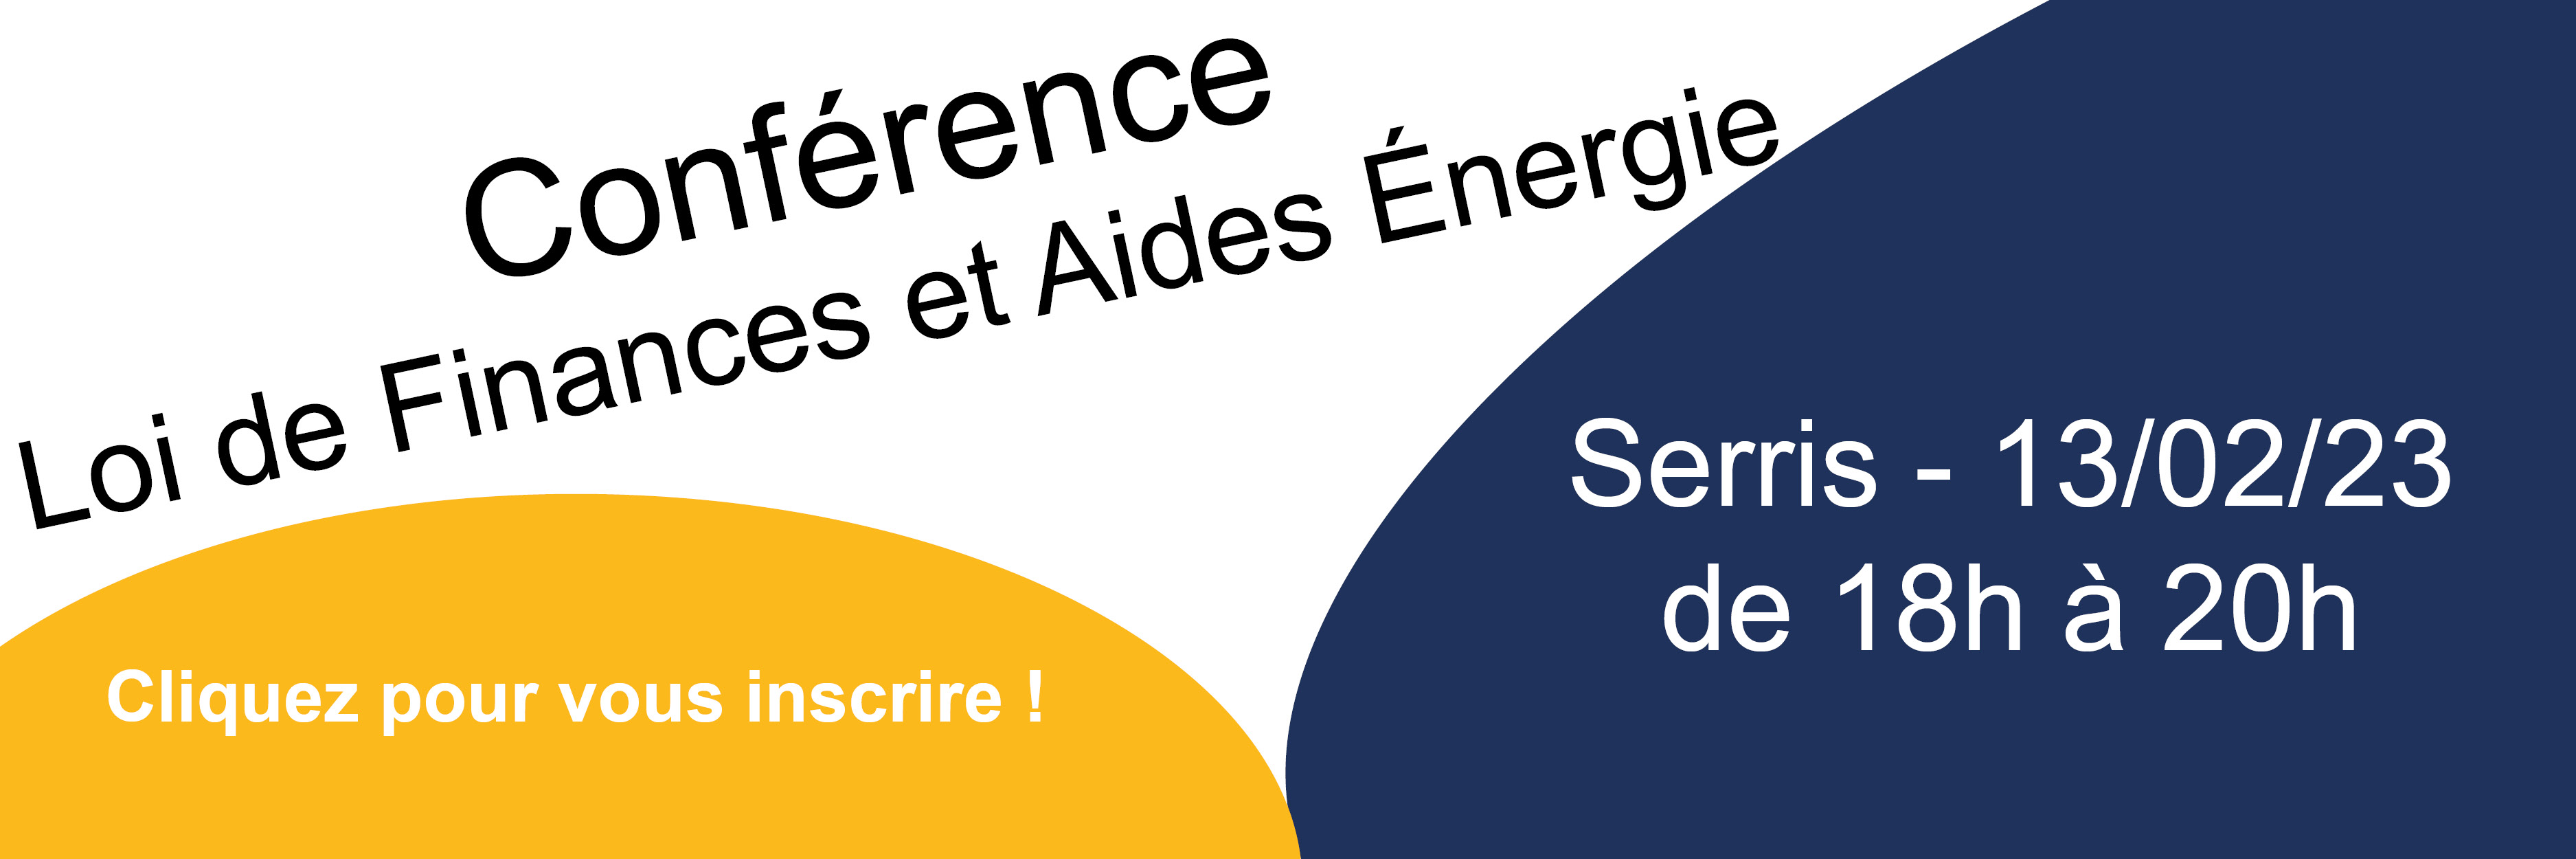 Conférence - Loi de Finances et Aides Énergie